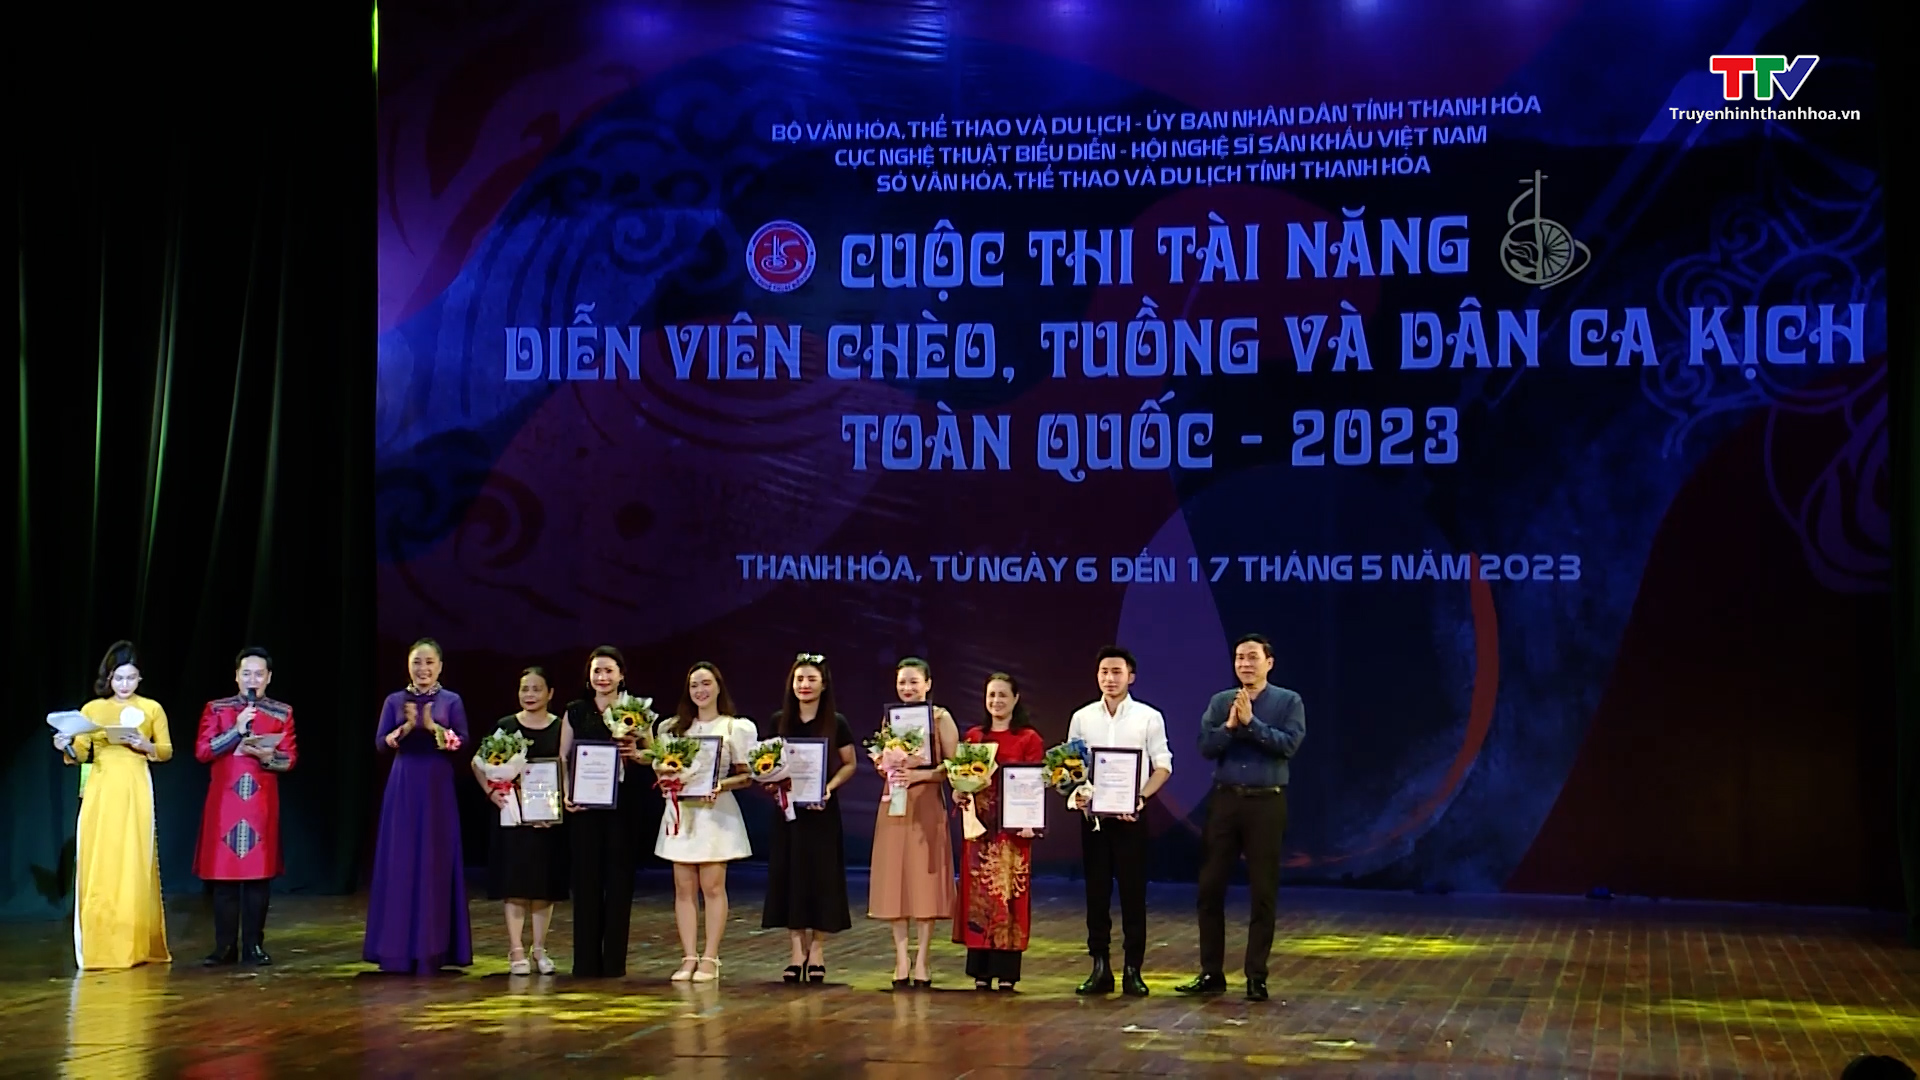 Chiều ngày 11/5, Cuộc thi Tài năng diễn viên Tuồng và Dân ca kịch toàn quốc 2023 diễn ra Lễ bế mạc và trao giải tại Nhà hát Lam Sơn (TP Thanh Hóa).